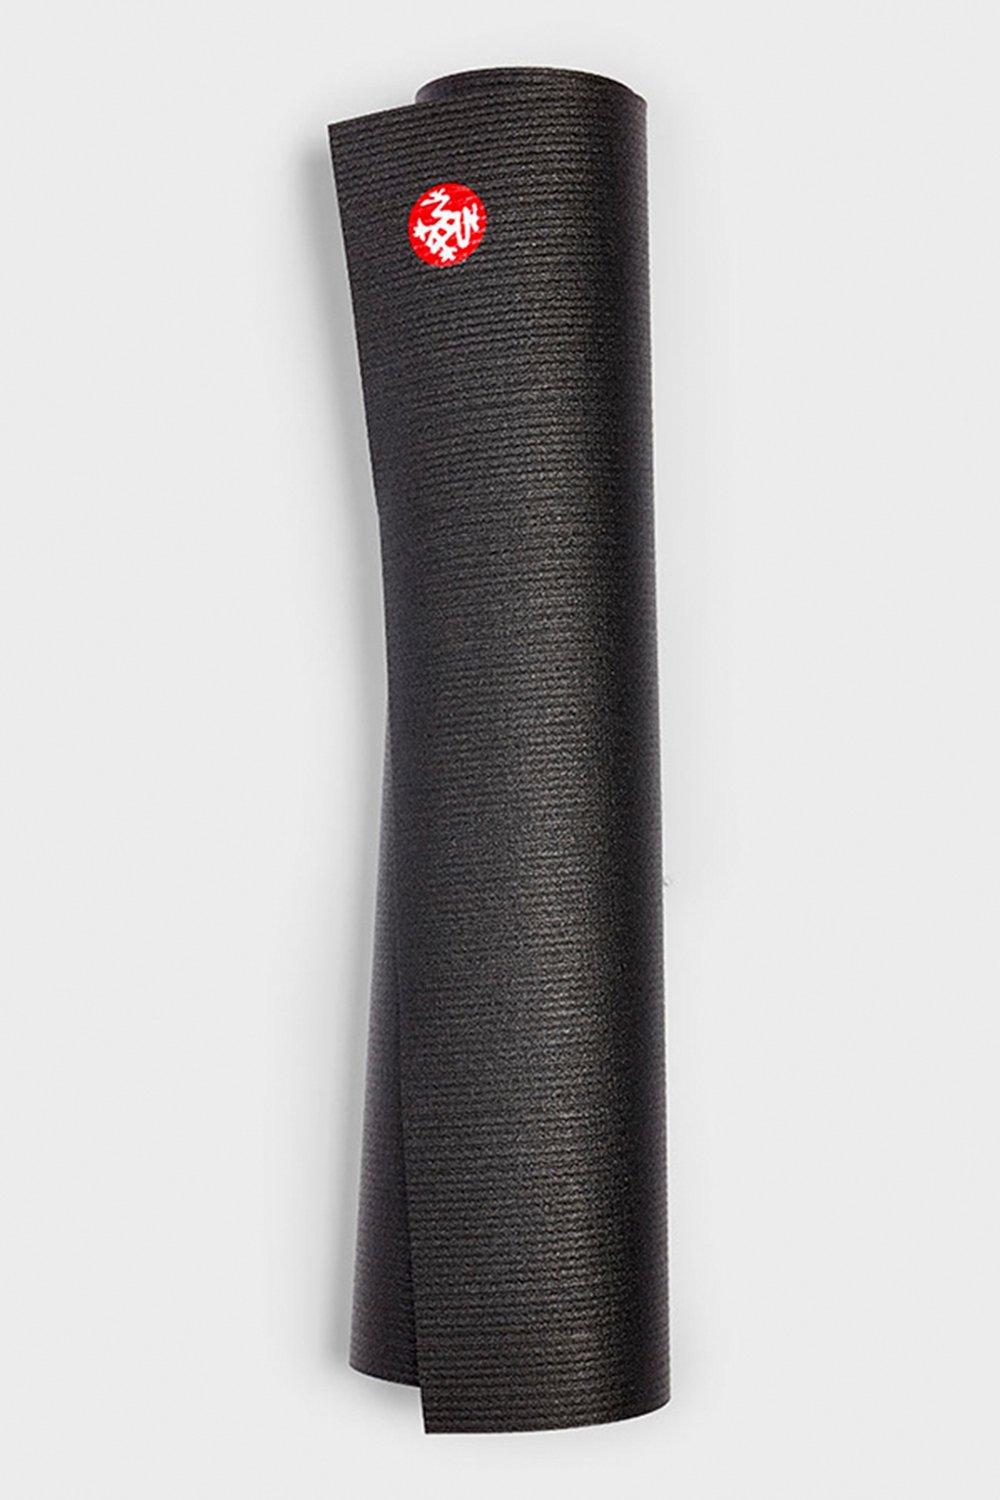 Коврик для йоги PROlite, длинный, 79 дюймов, 4,7 мм Manduka, черный 28366